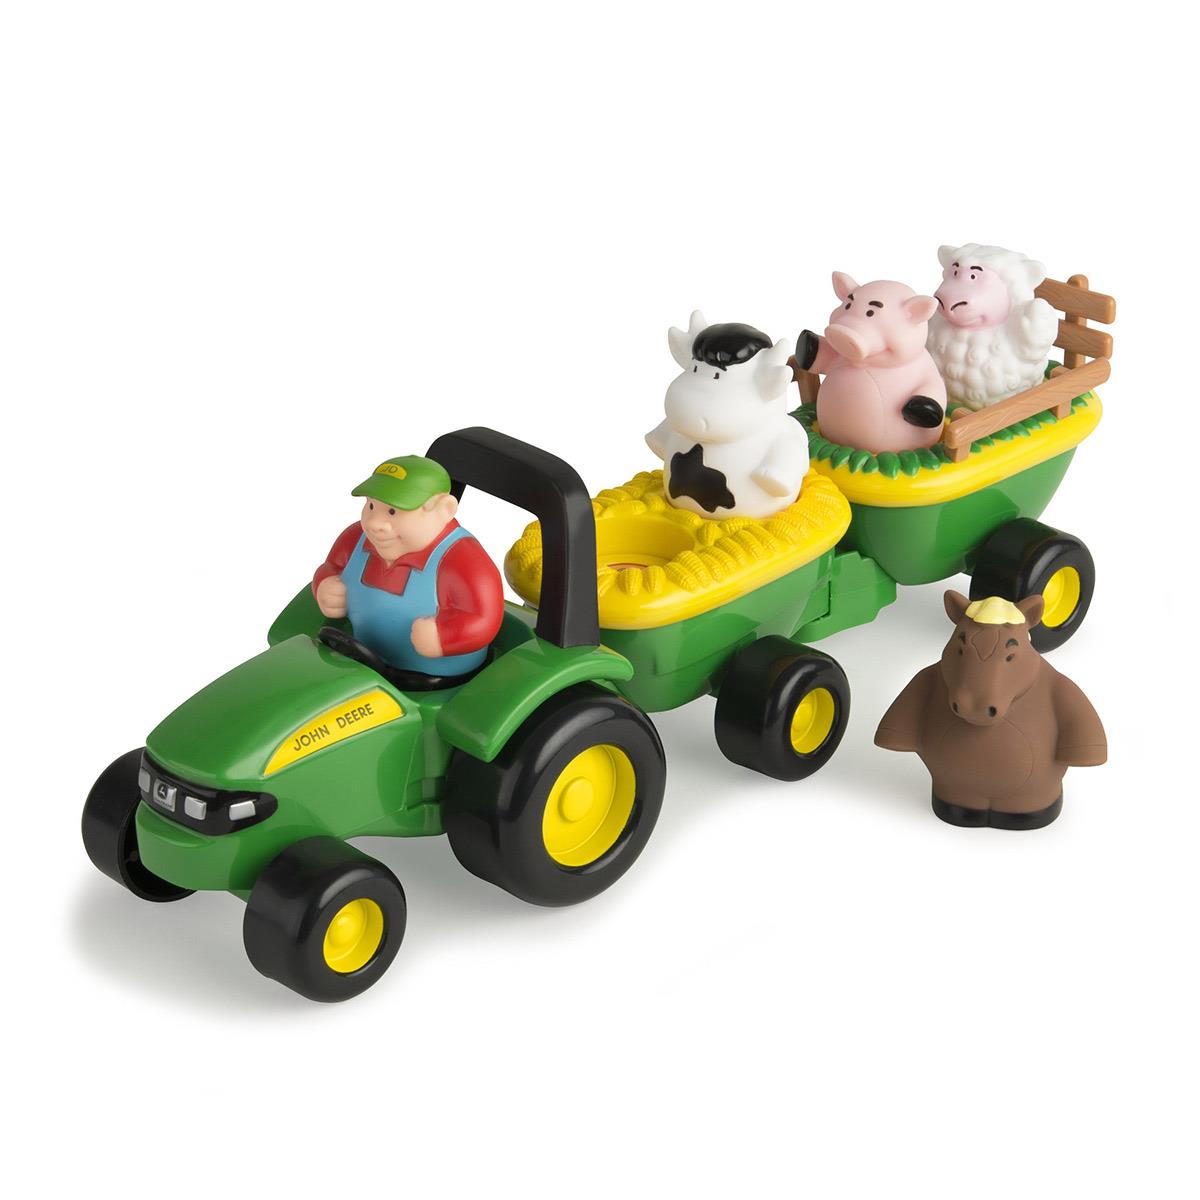 Tomy - John Deere, Dźwiękowy traktor ze zwierzątkami